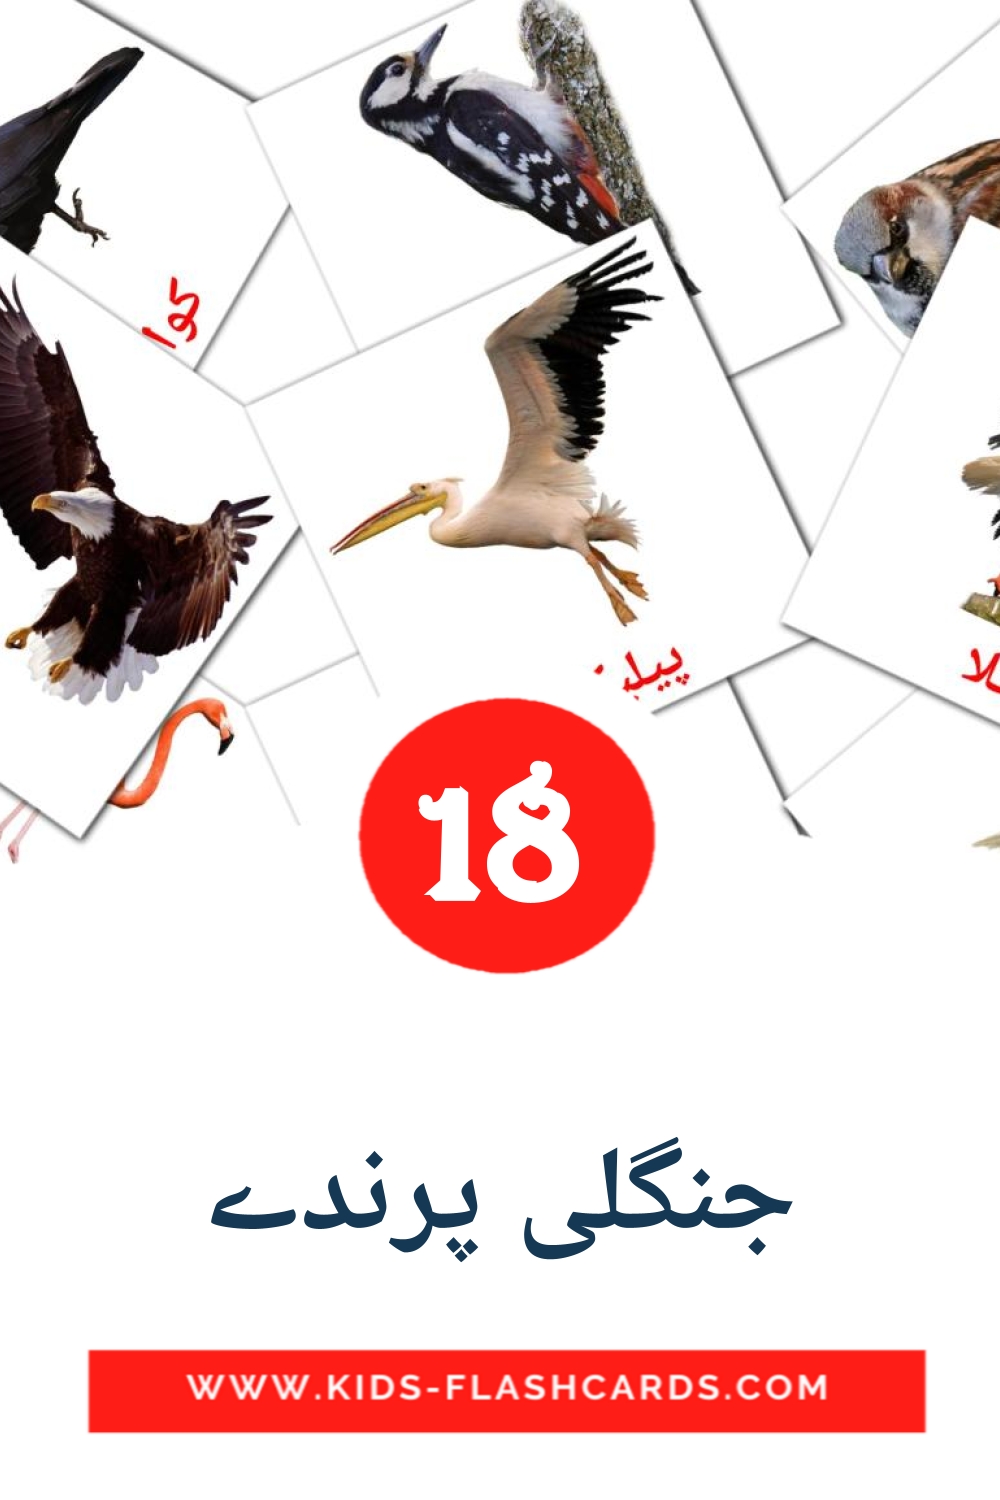 18 جنگلی پرندے fotokaarten voor kleuters in het urdu